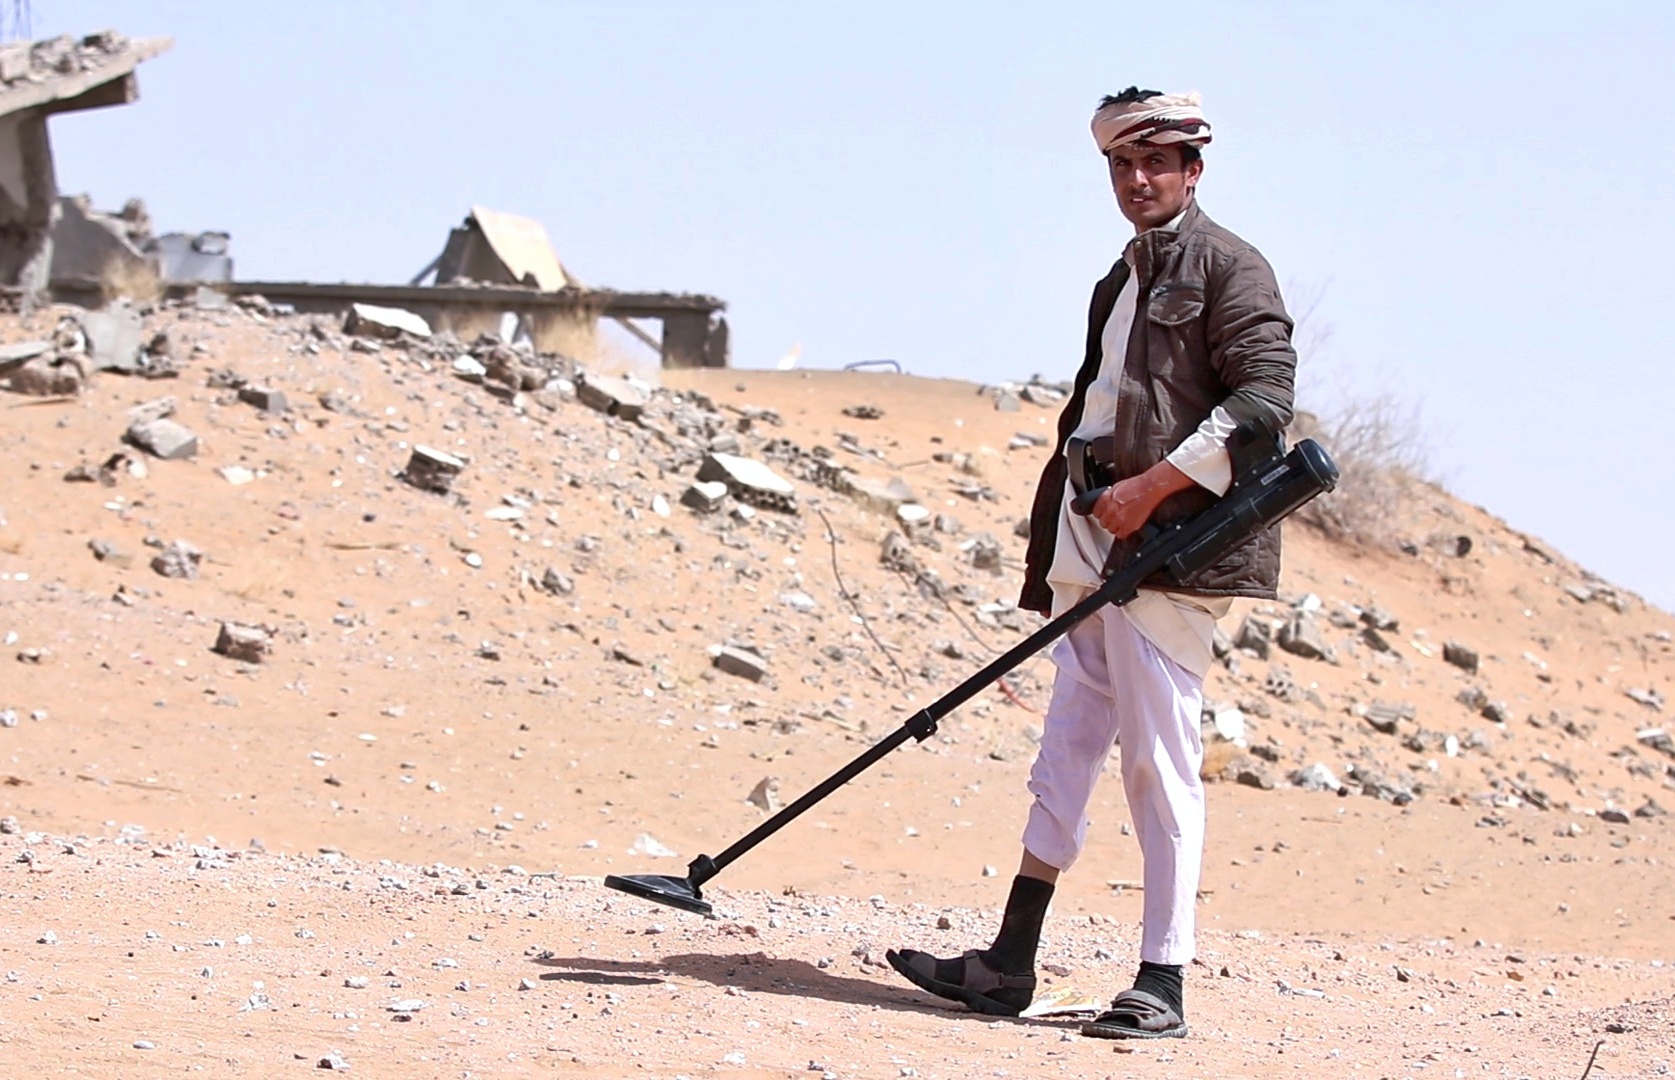 يوسف يستخدم معدات تقنية للبحث عن الألغام في عسيلان (اندبندنت عربية)